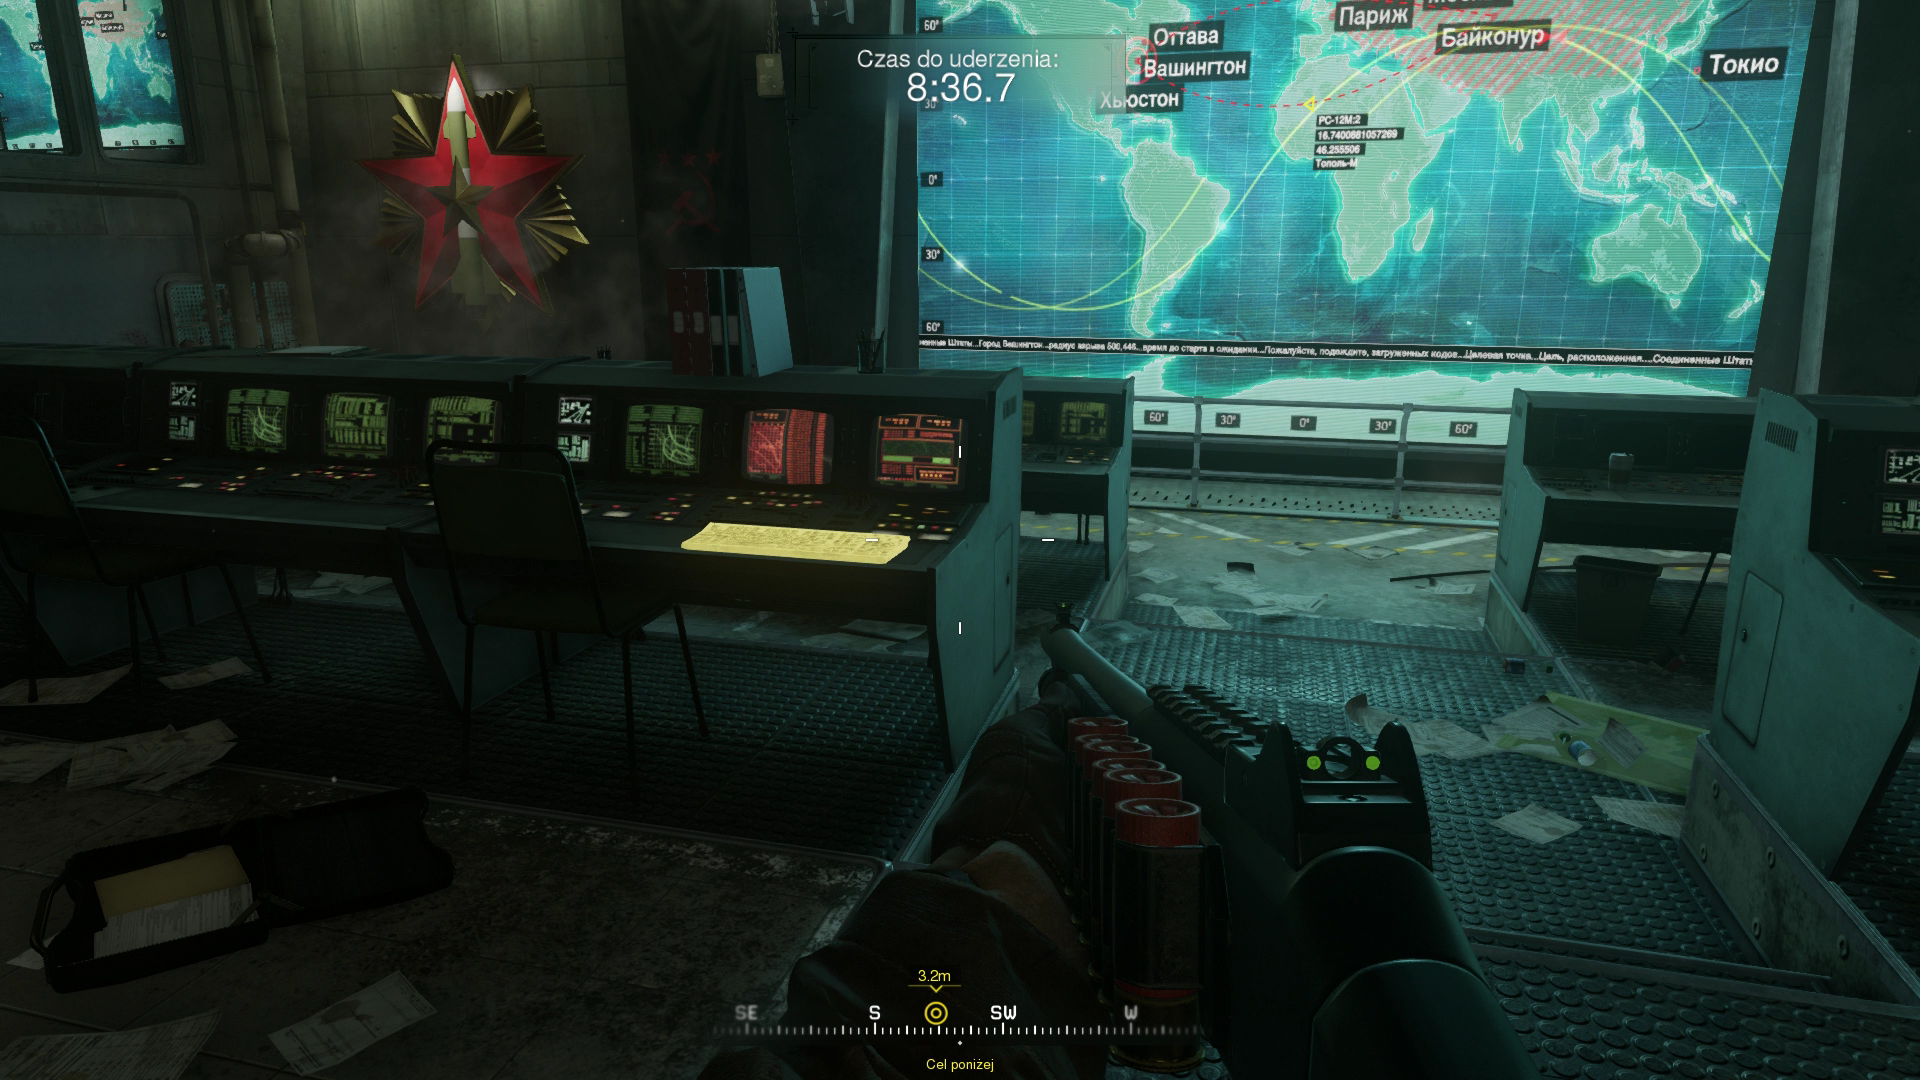 Obrazki dla Call of Duty: Modern Warfare - Nie można walczyć w sali wojennej